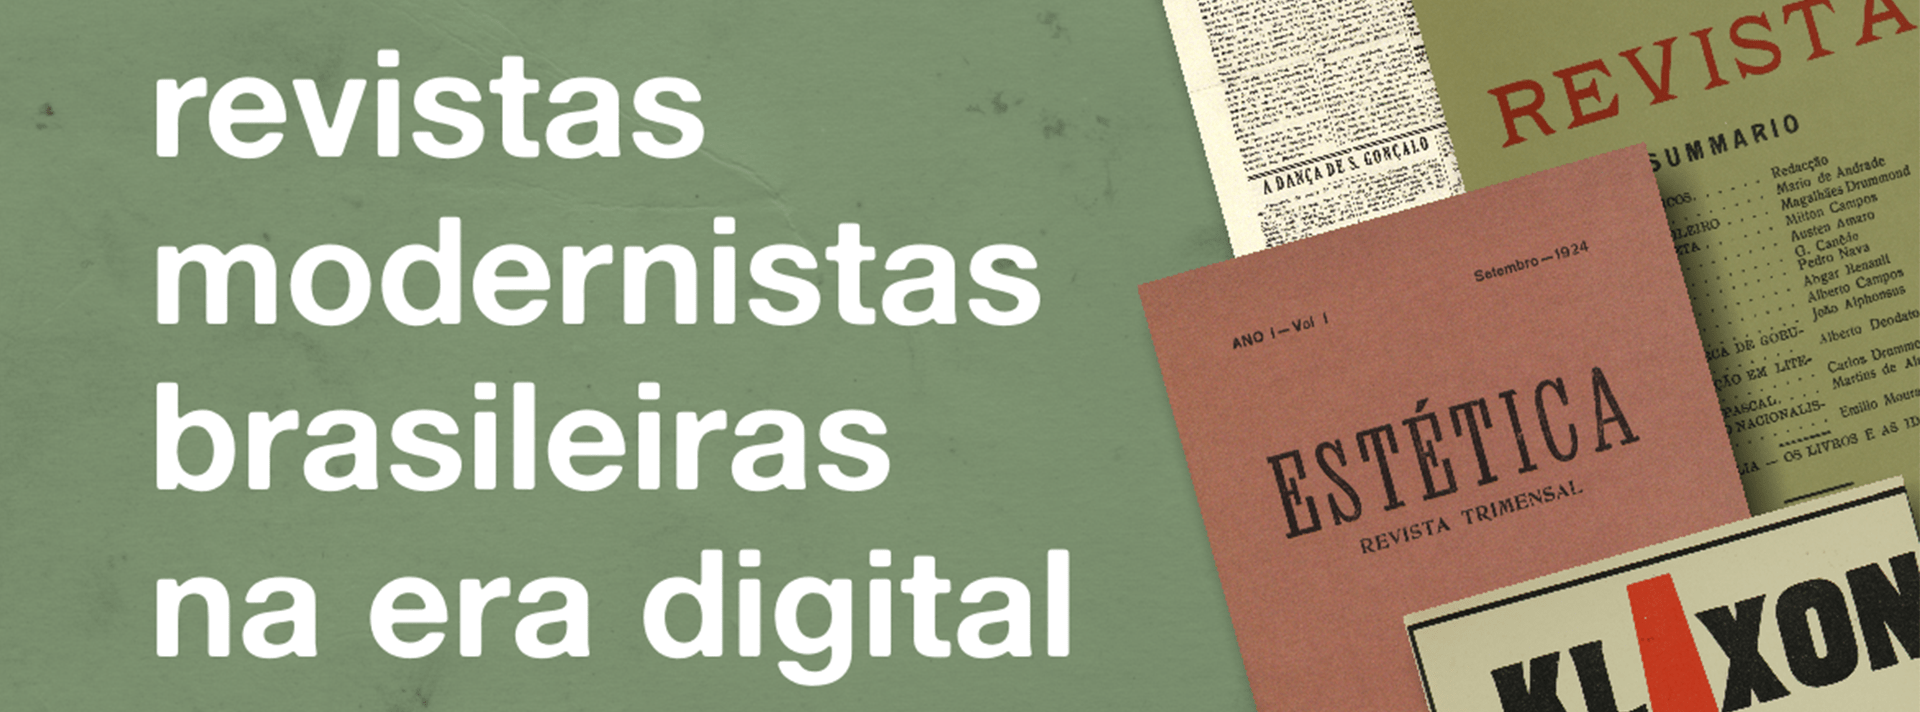 Parceria Brasil – Portugal traz revistas históricas do movimento modernista digitalizadas e disponibilizadas pela USP